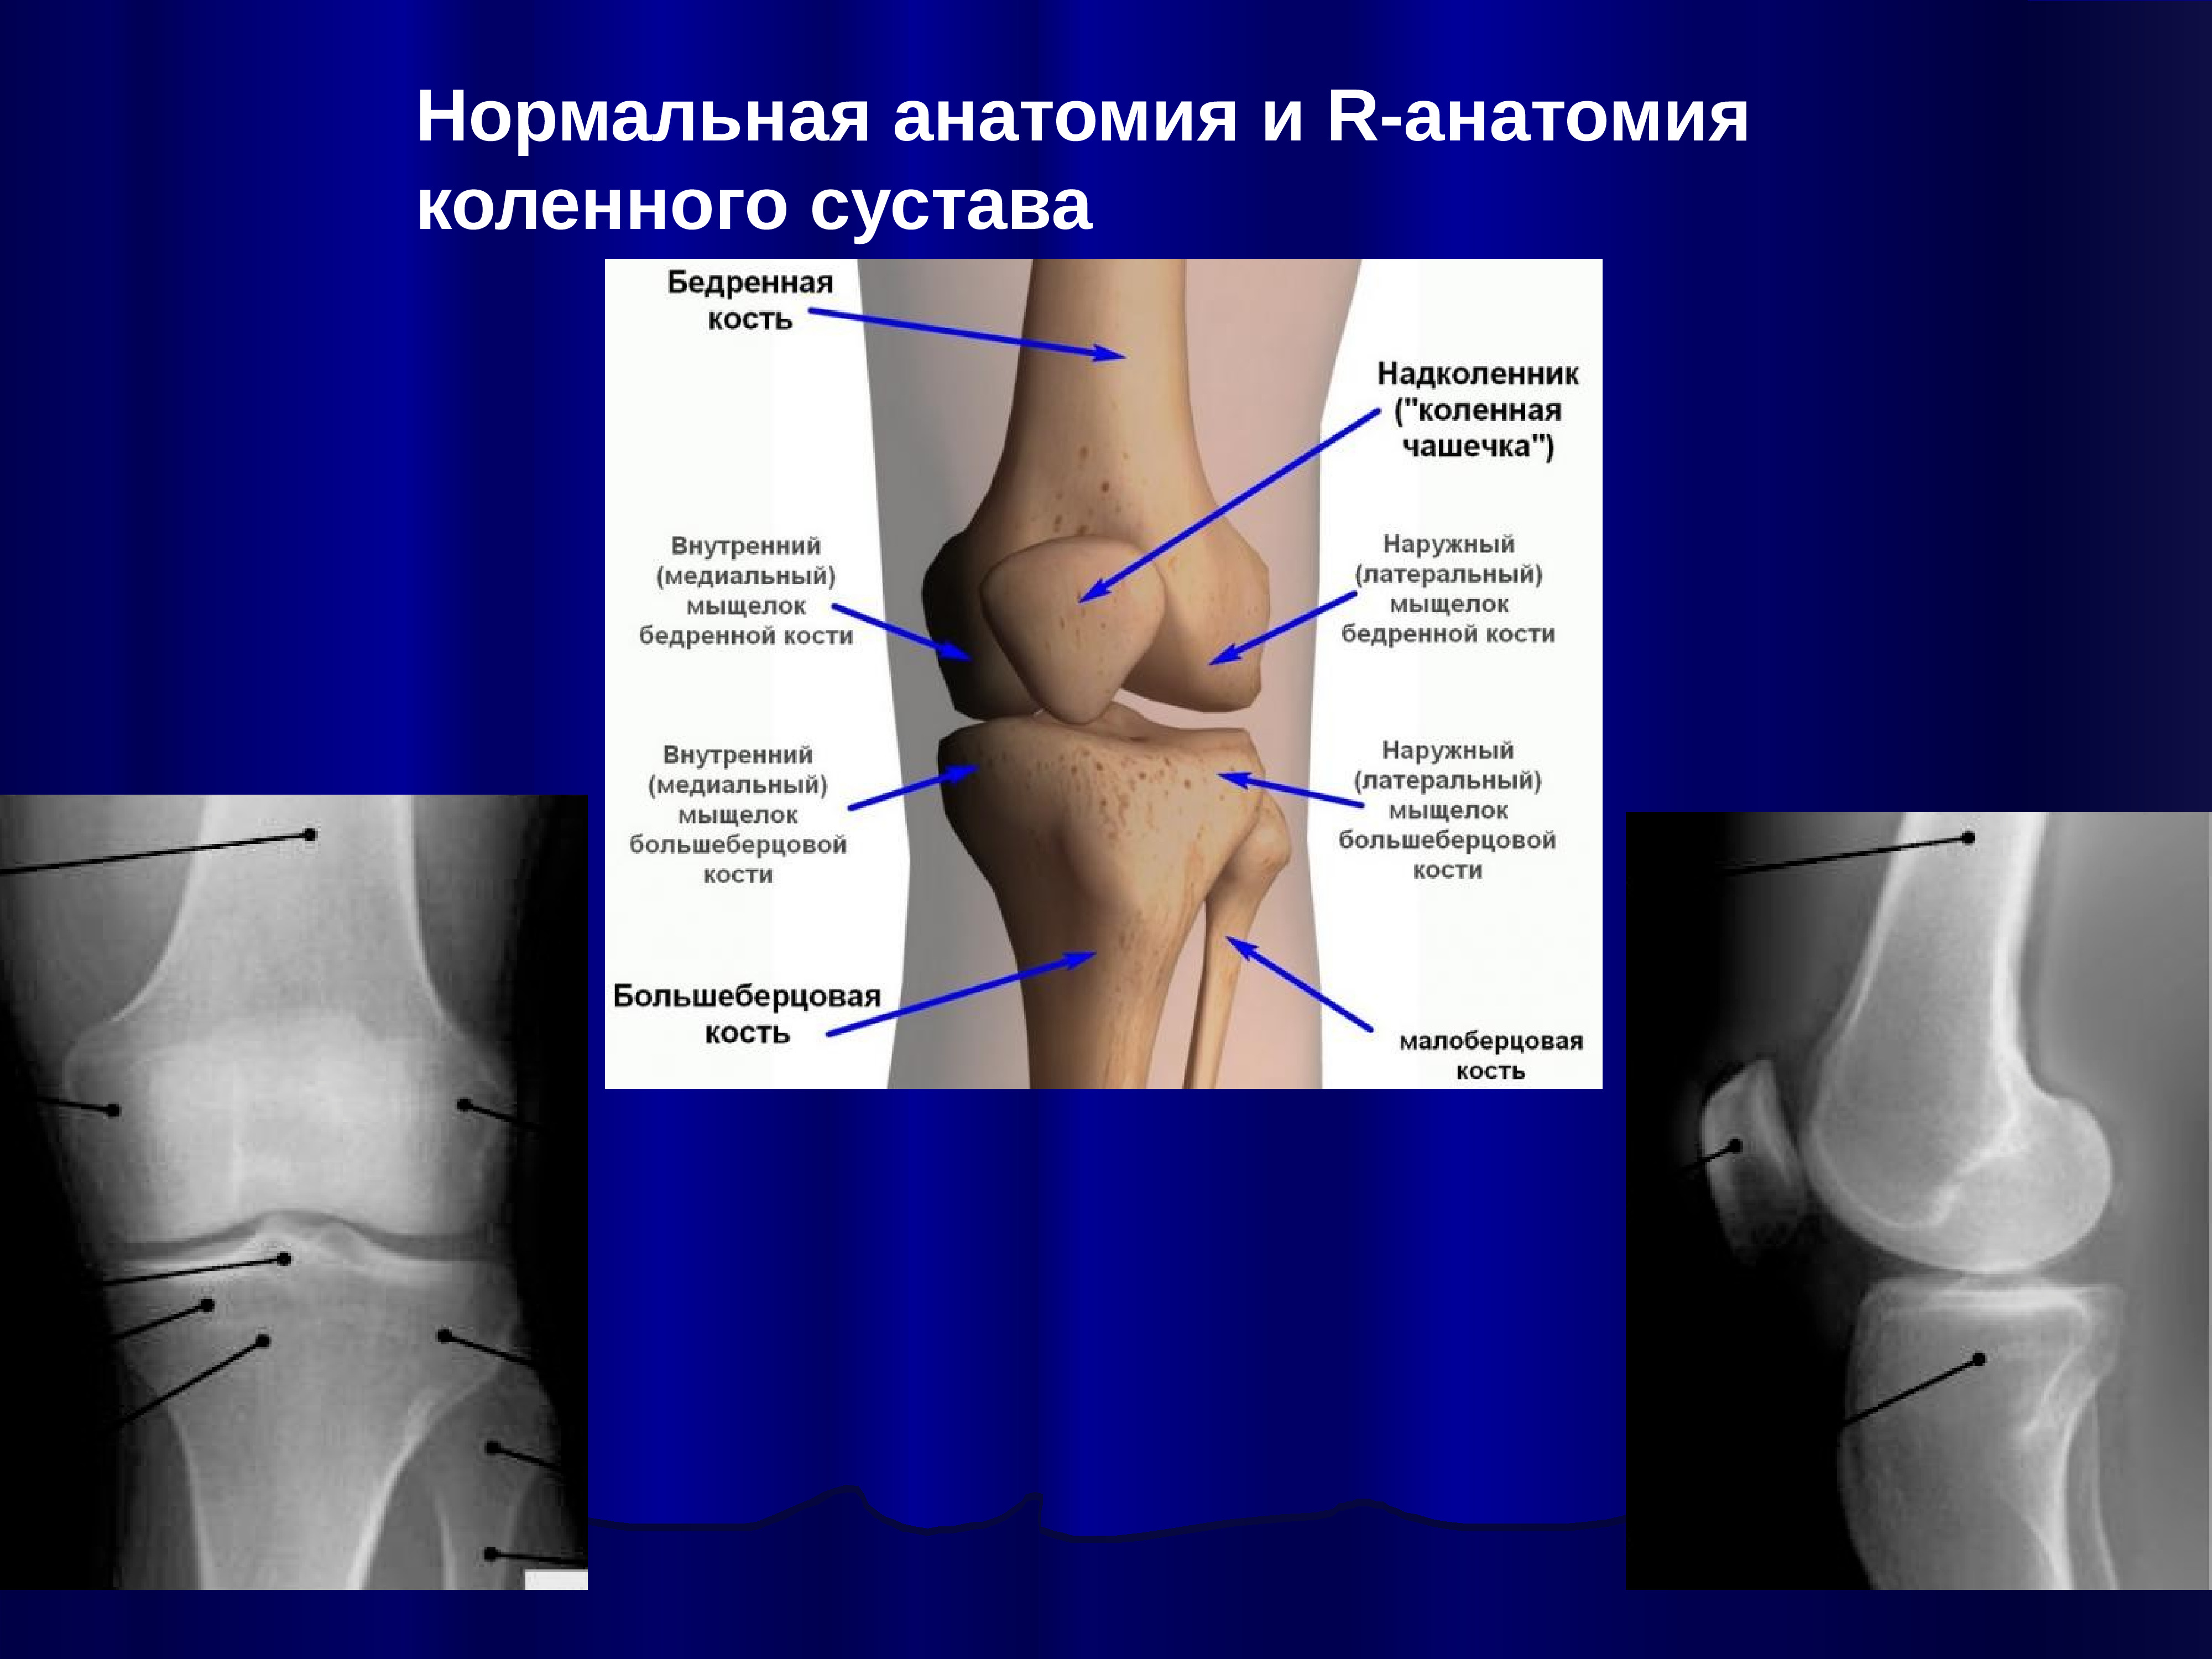 Отек мыщелка бедренной. Анатомия коленного сустава кости. Анатомия коленного сустава мыщелки. Медиальный мыщелок бедренной кости. Внутренний мыщелок большеберцовой кости.